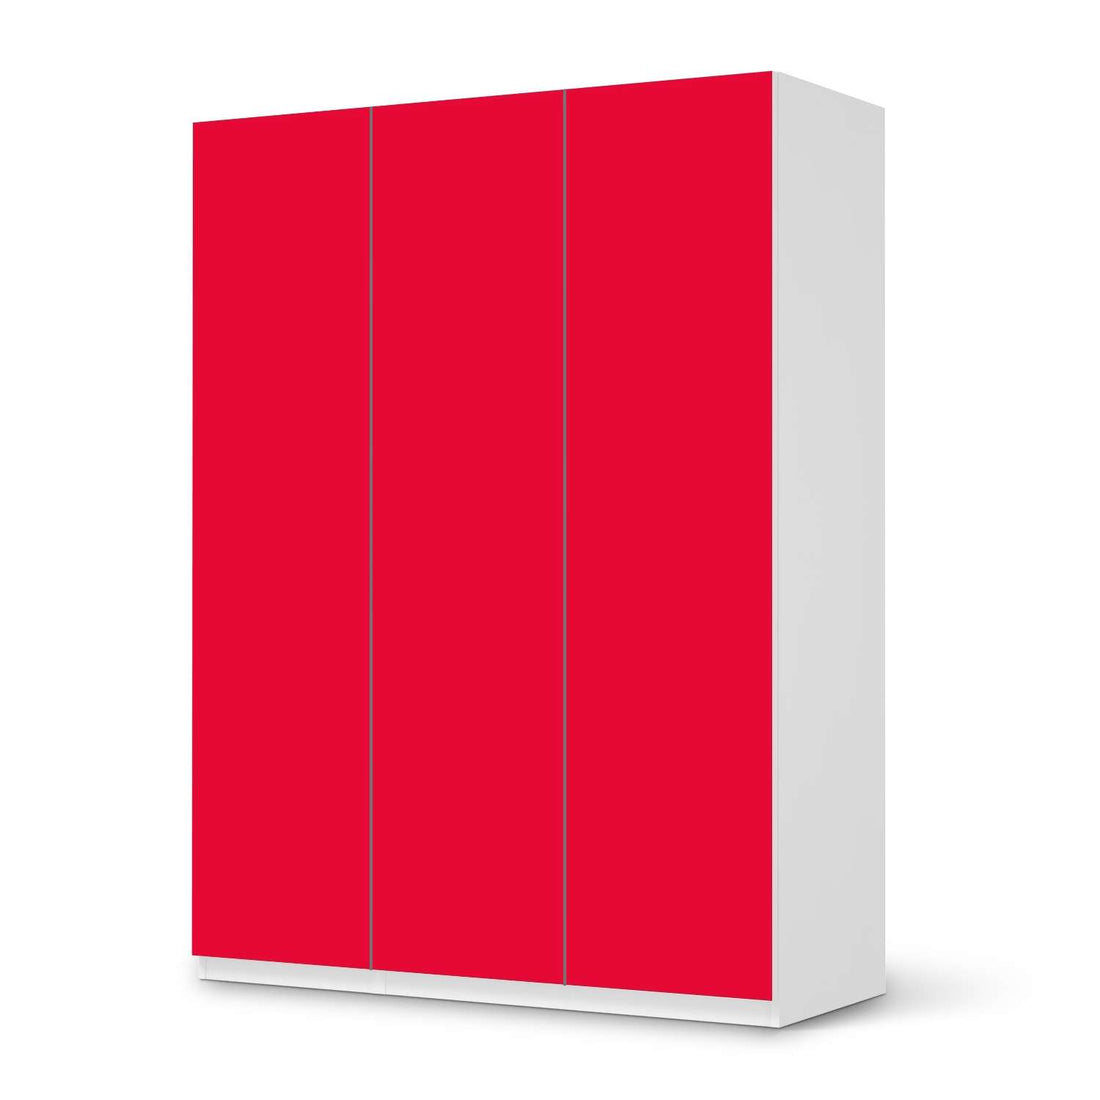 Folie für Möbel Rot Light - IKEA Pax Schrank 201 cm Höhe - 3 Türen - weiss